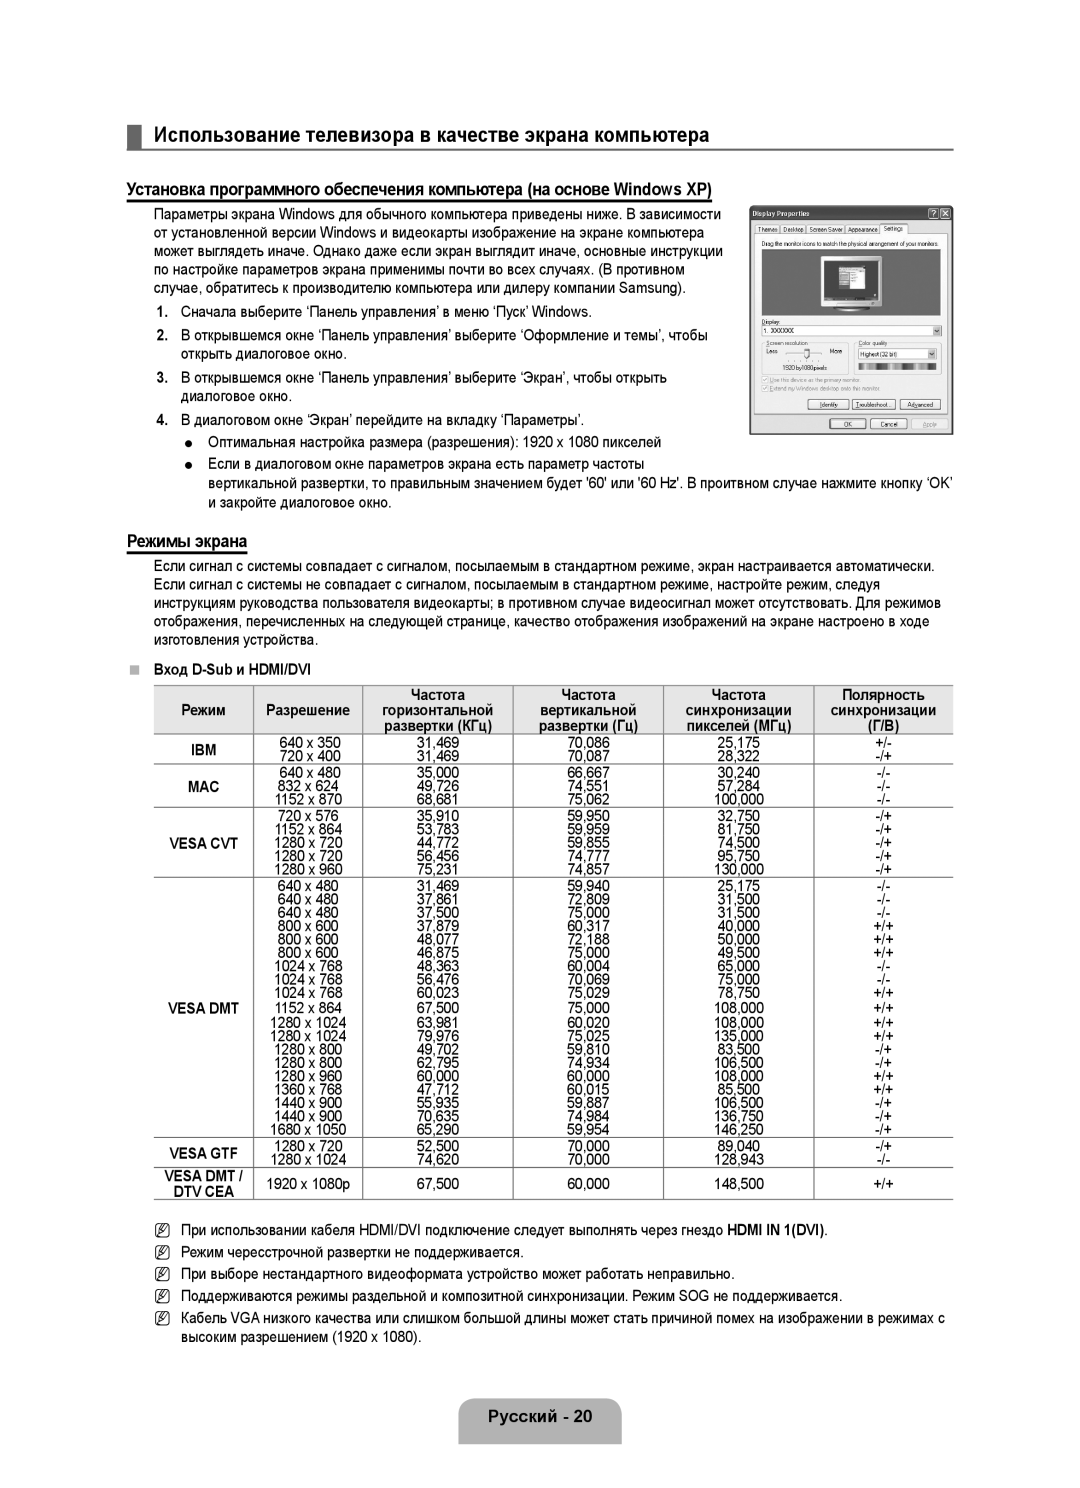 Samsung UE46B6000VWXXN manual Использование телевизора в качестве экрана компьютера, Режимы экрана, Вход D-Sub и HDMI/DVI 